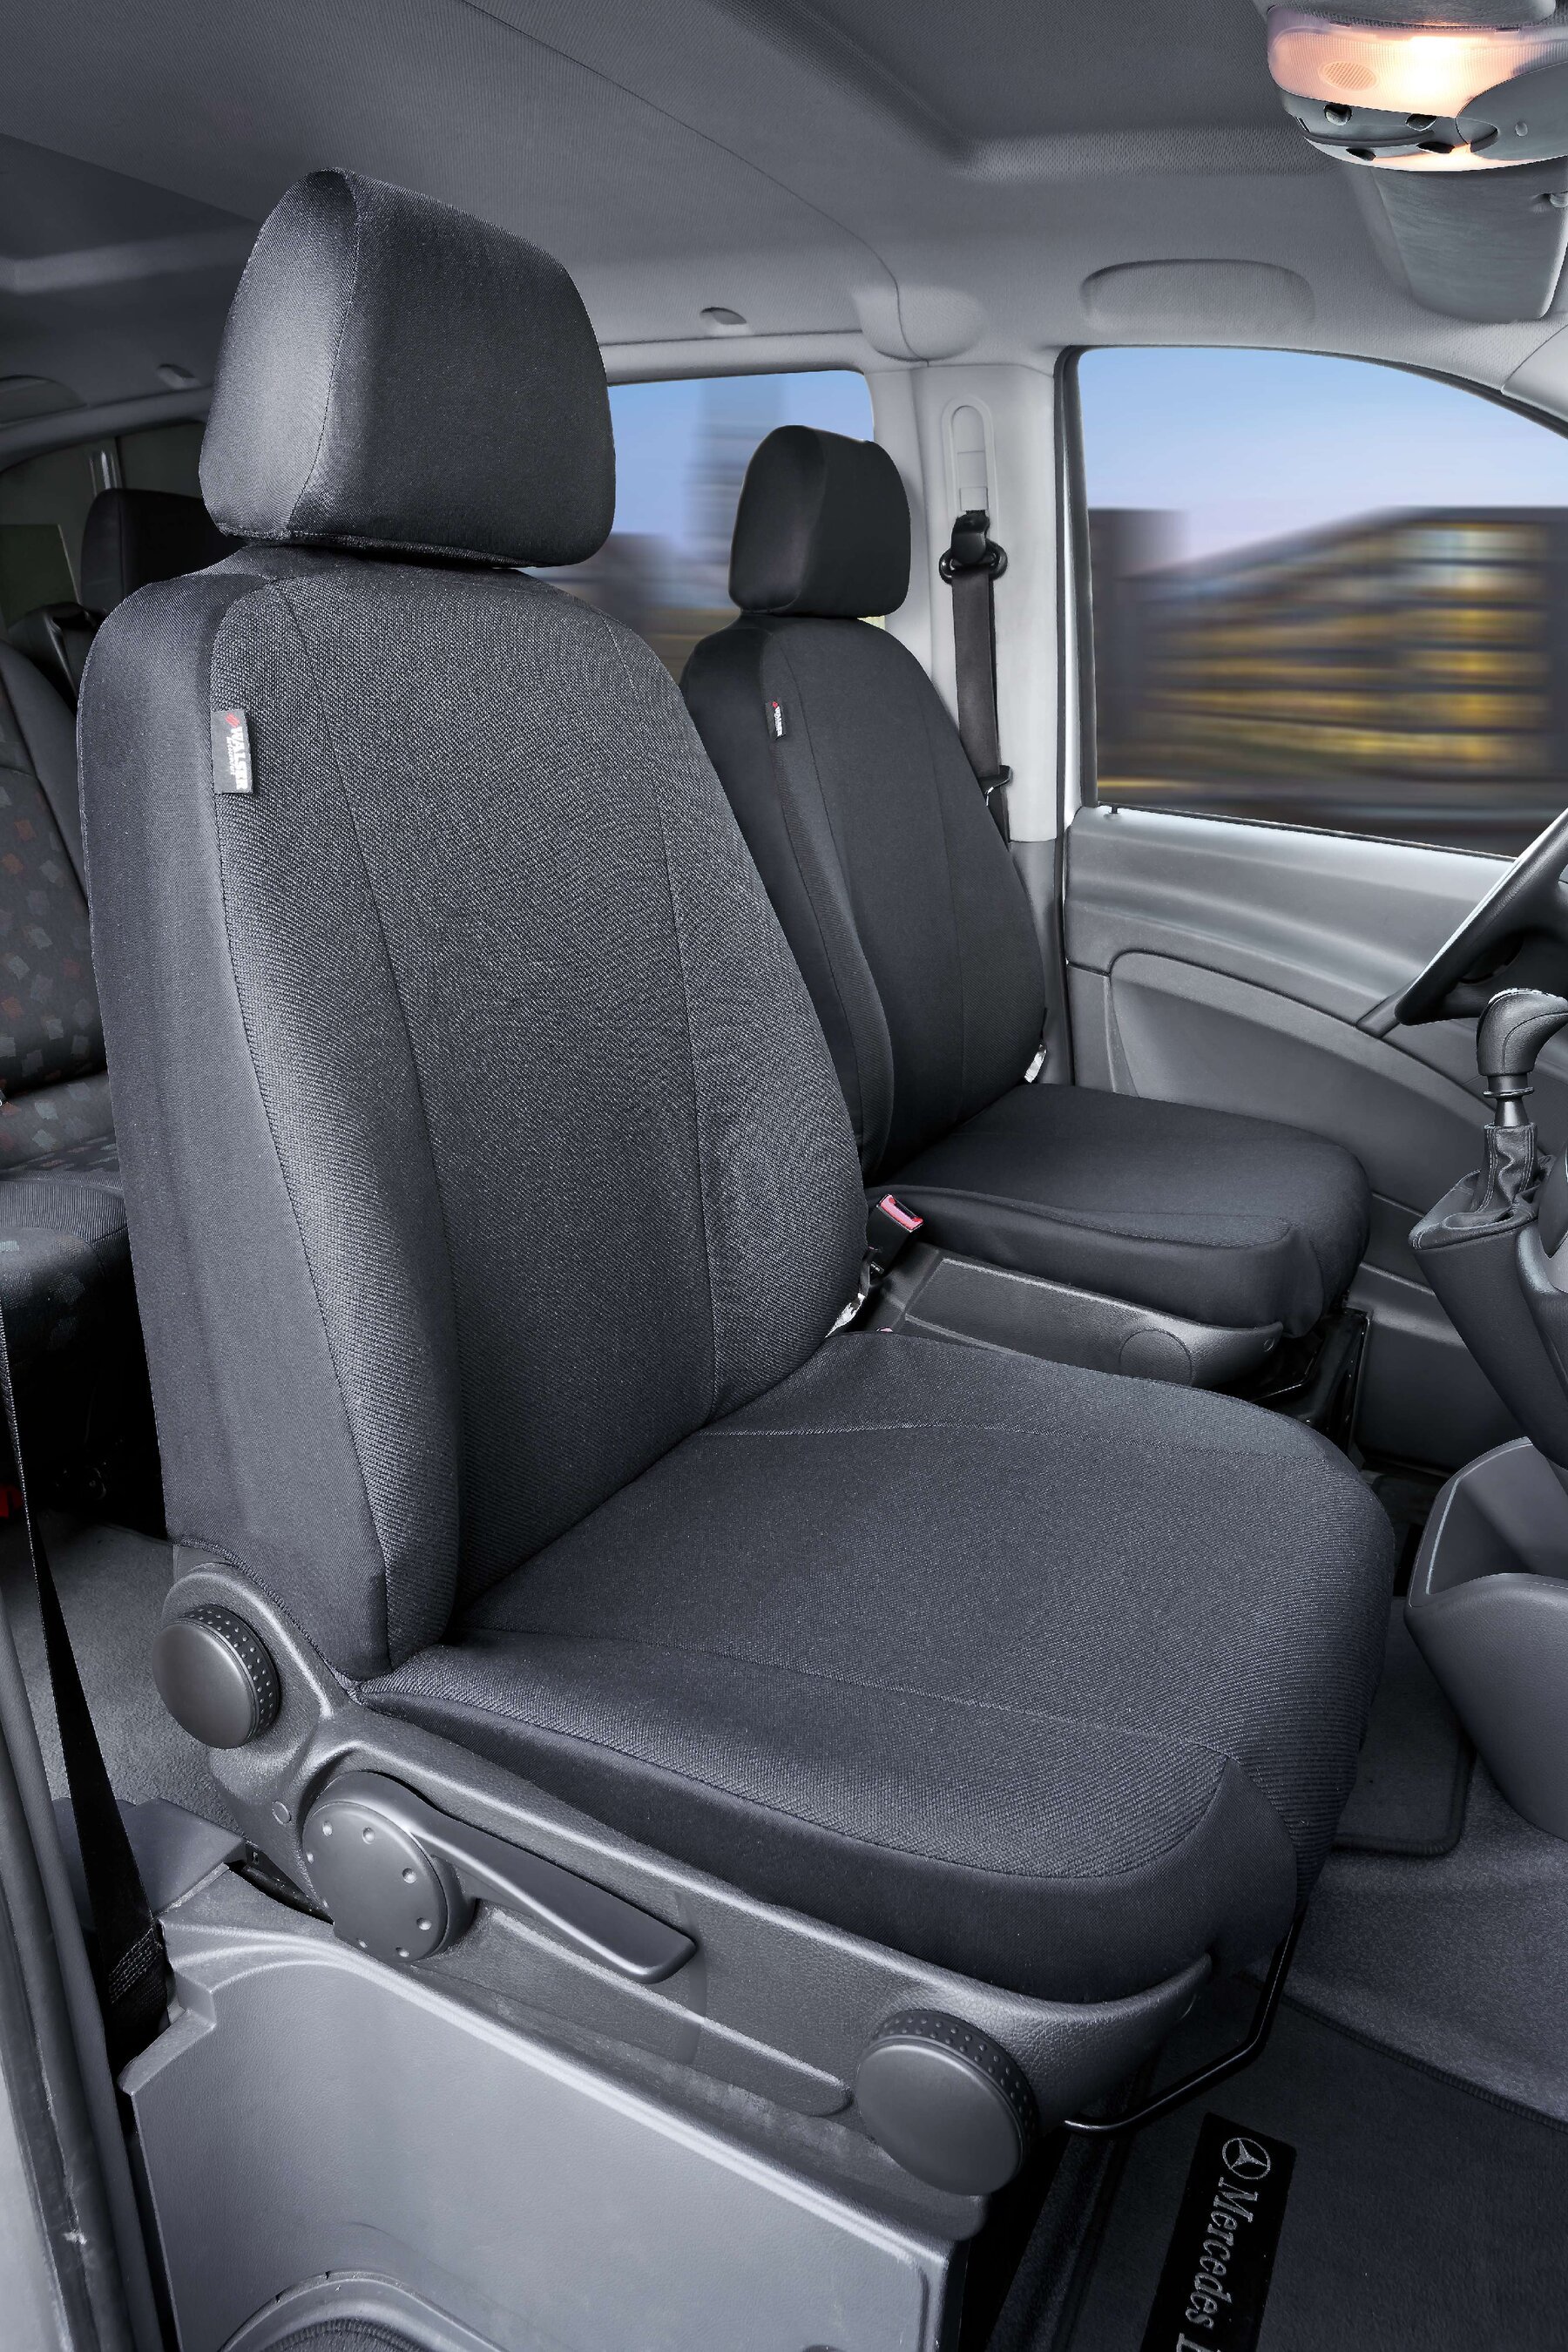 Passform Sitzbezug aus Stoff kompatibel mit Mercedes-Benz Viano/Vito, 2 Einzelsitze vorne - kein Airbag